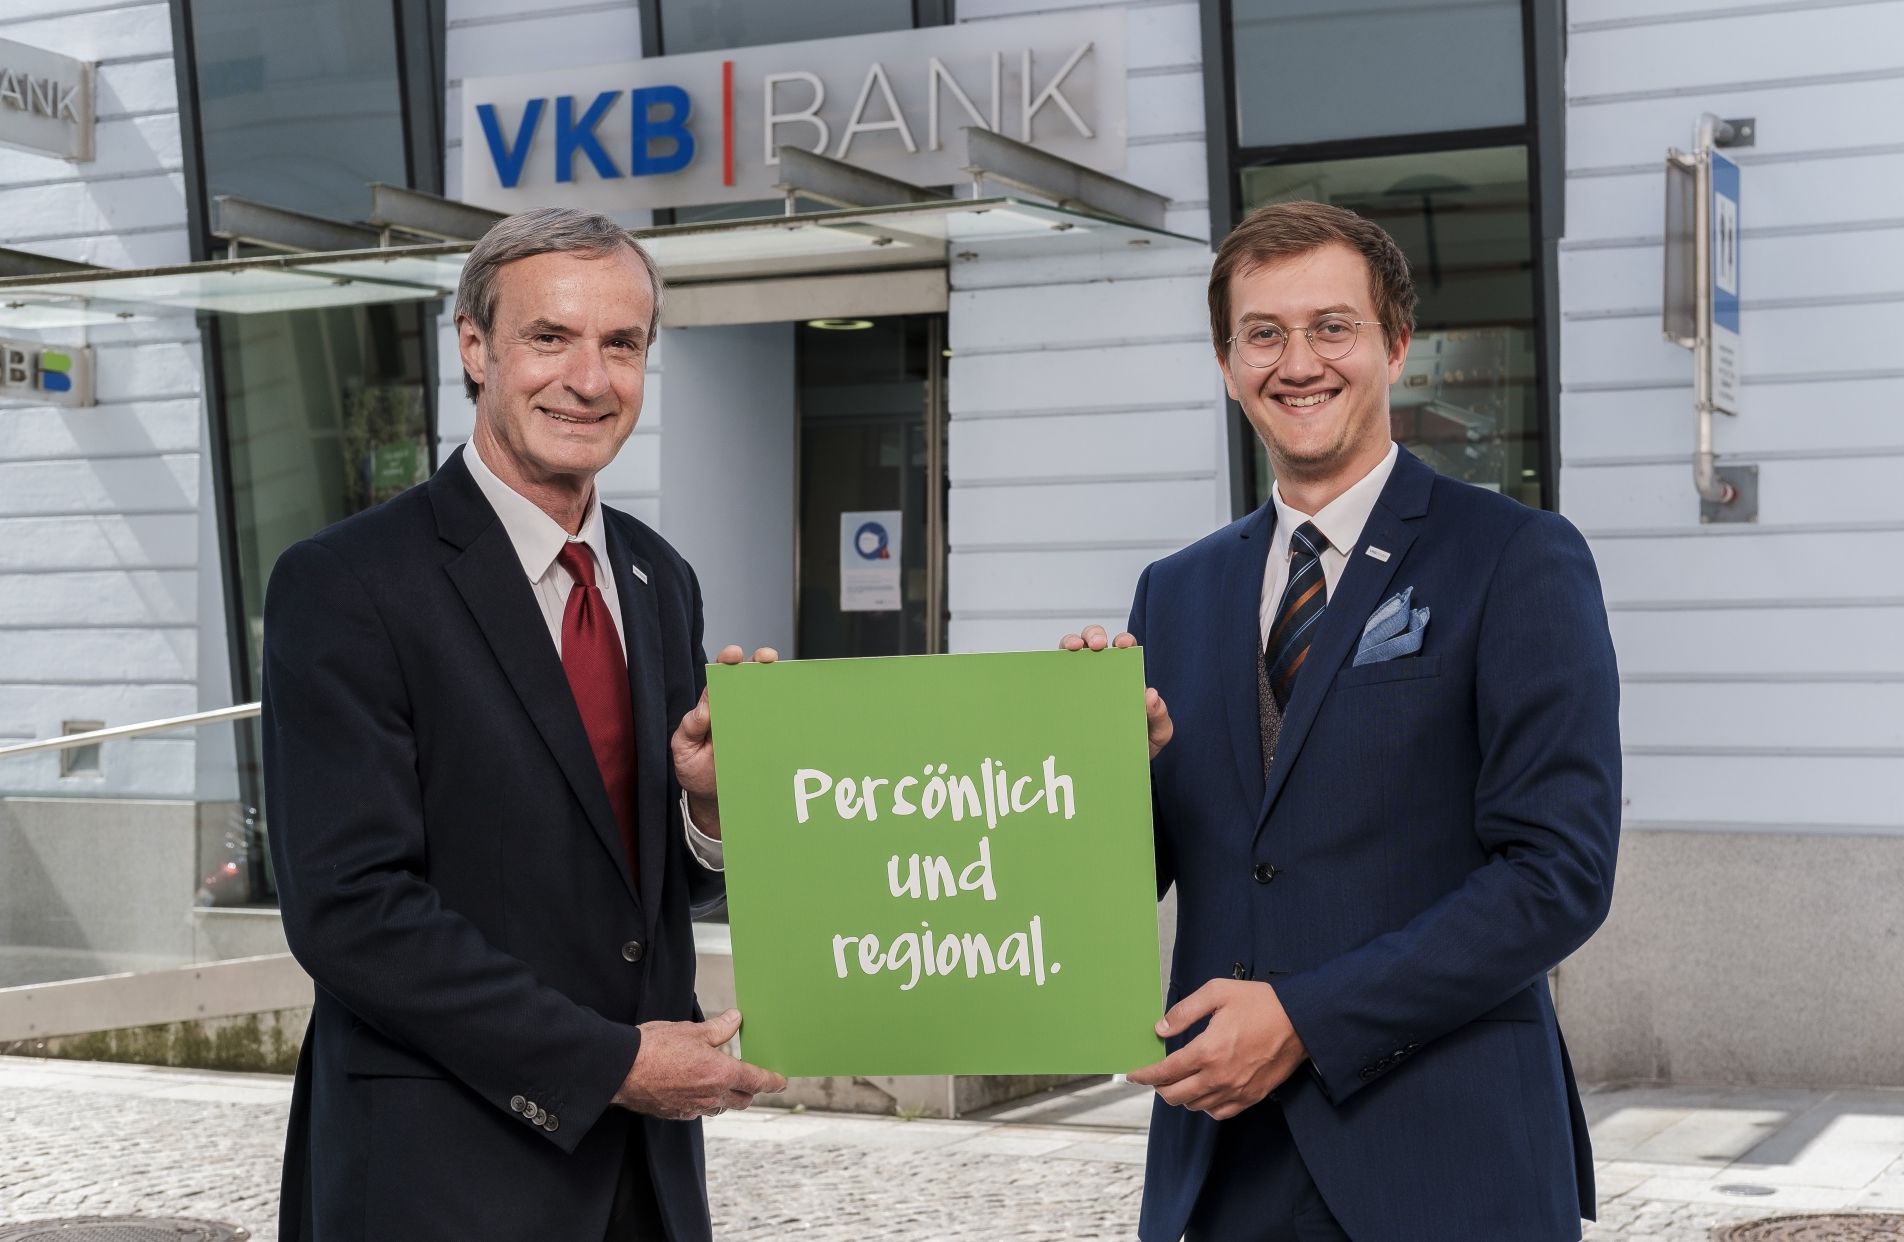 Wolfgang Leeb ist neuer Filialdirektor der VKB-Bank Gmunden. Dr. Leopold Tröstl wechselt in den Ruhstand.